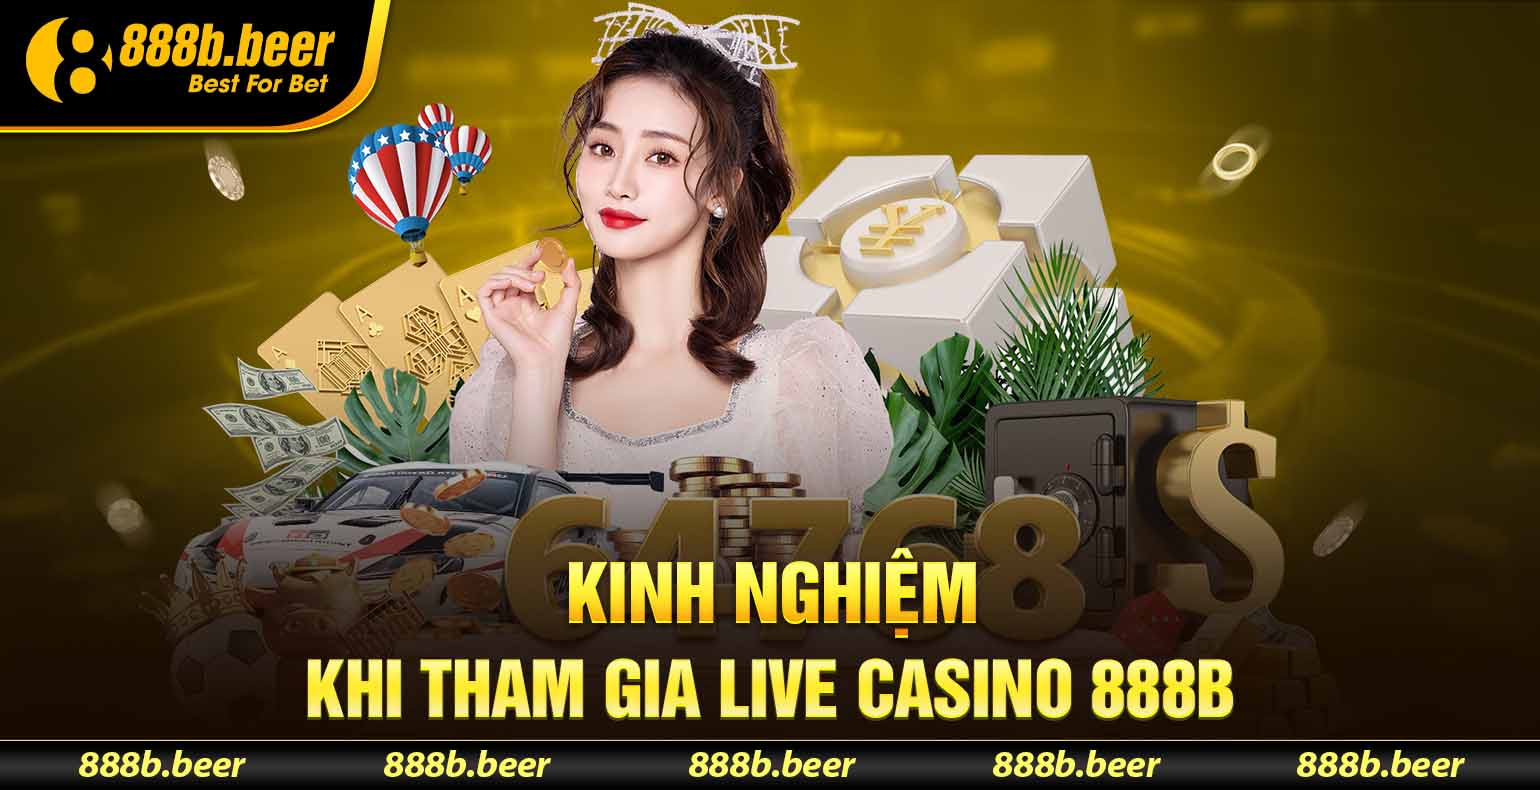 live casino 888B